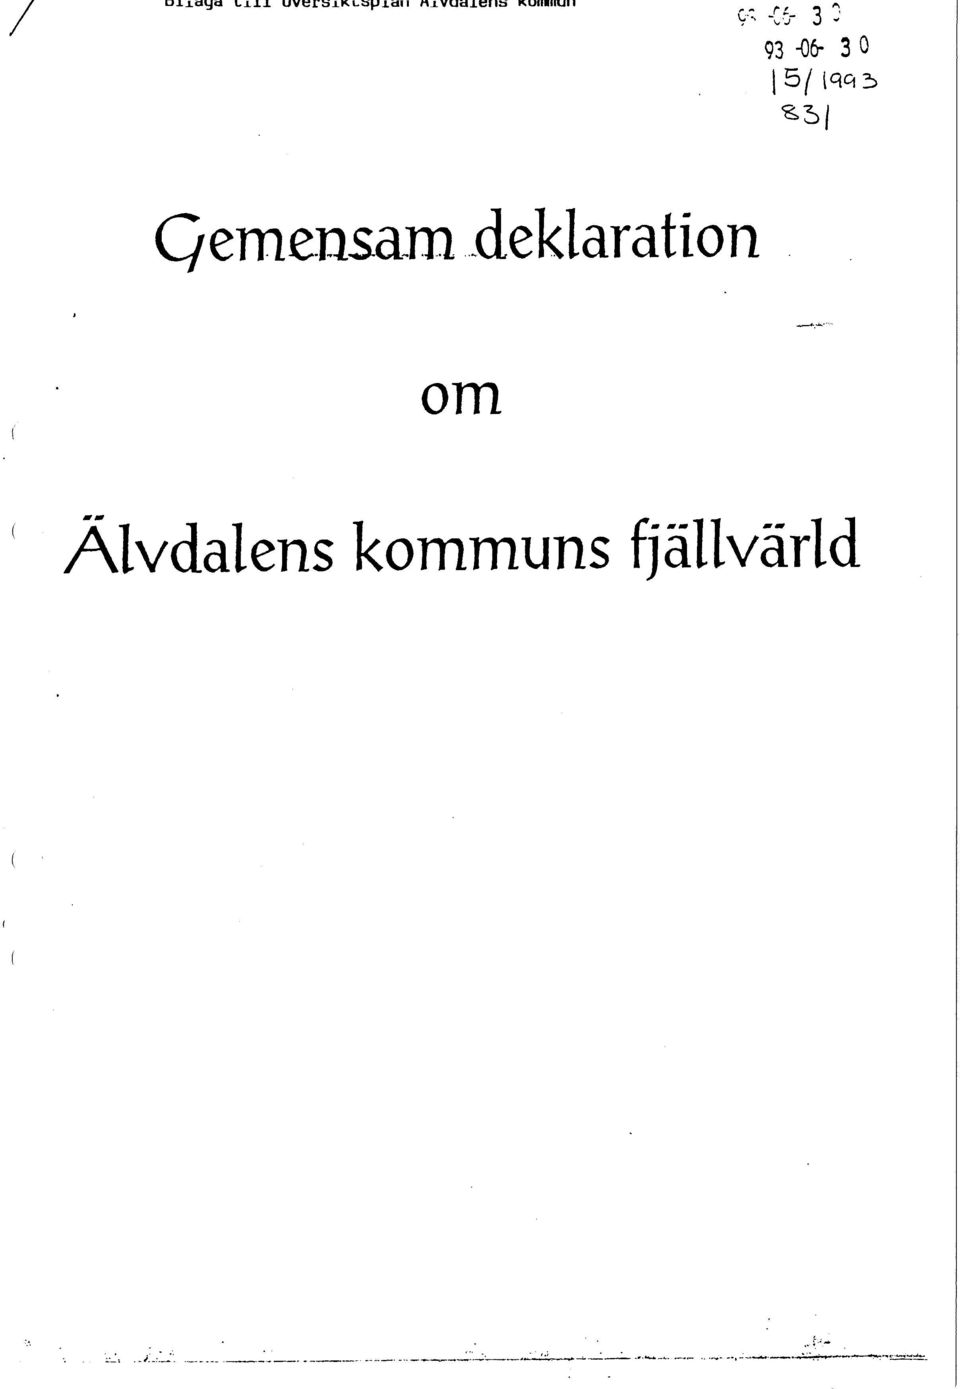 3 0 *5 Qemensara deklaration